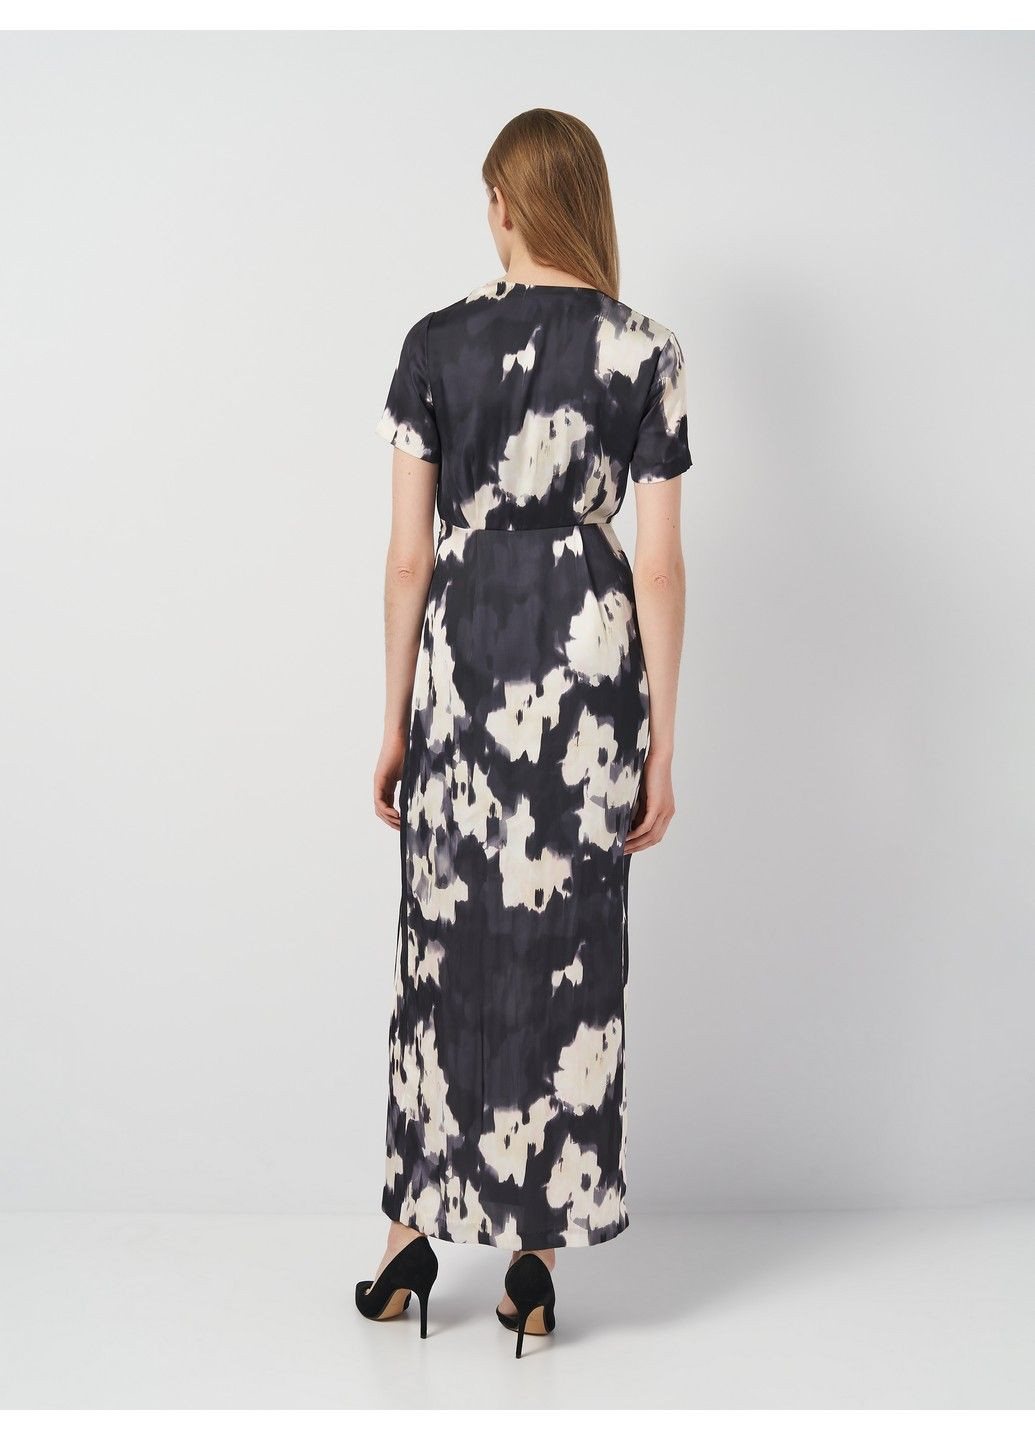 Темно-серое вечернее платье H&M с абстрактным узором